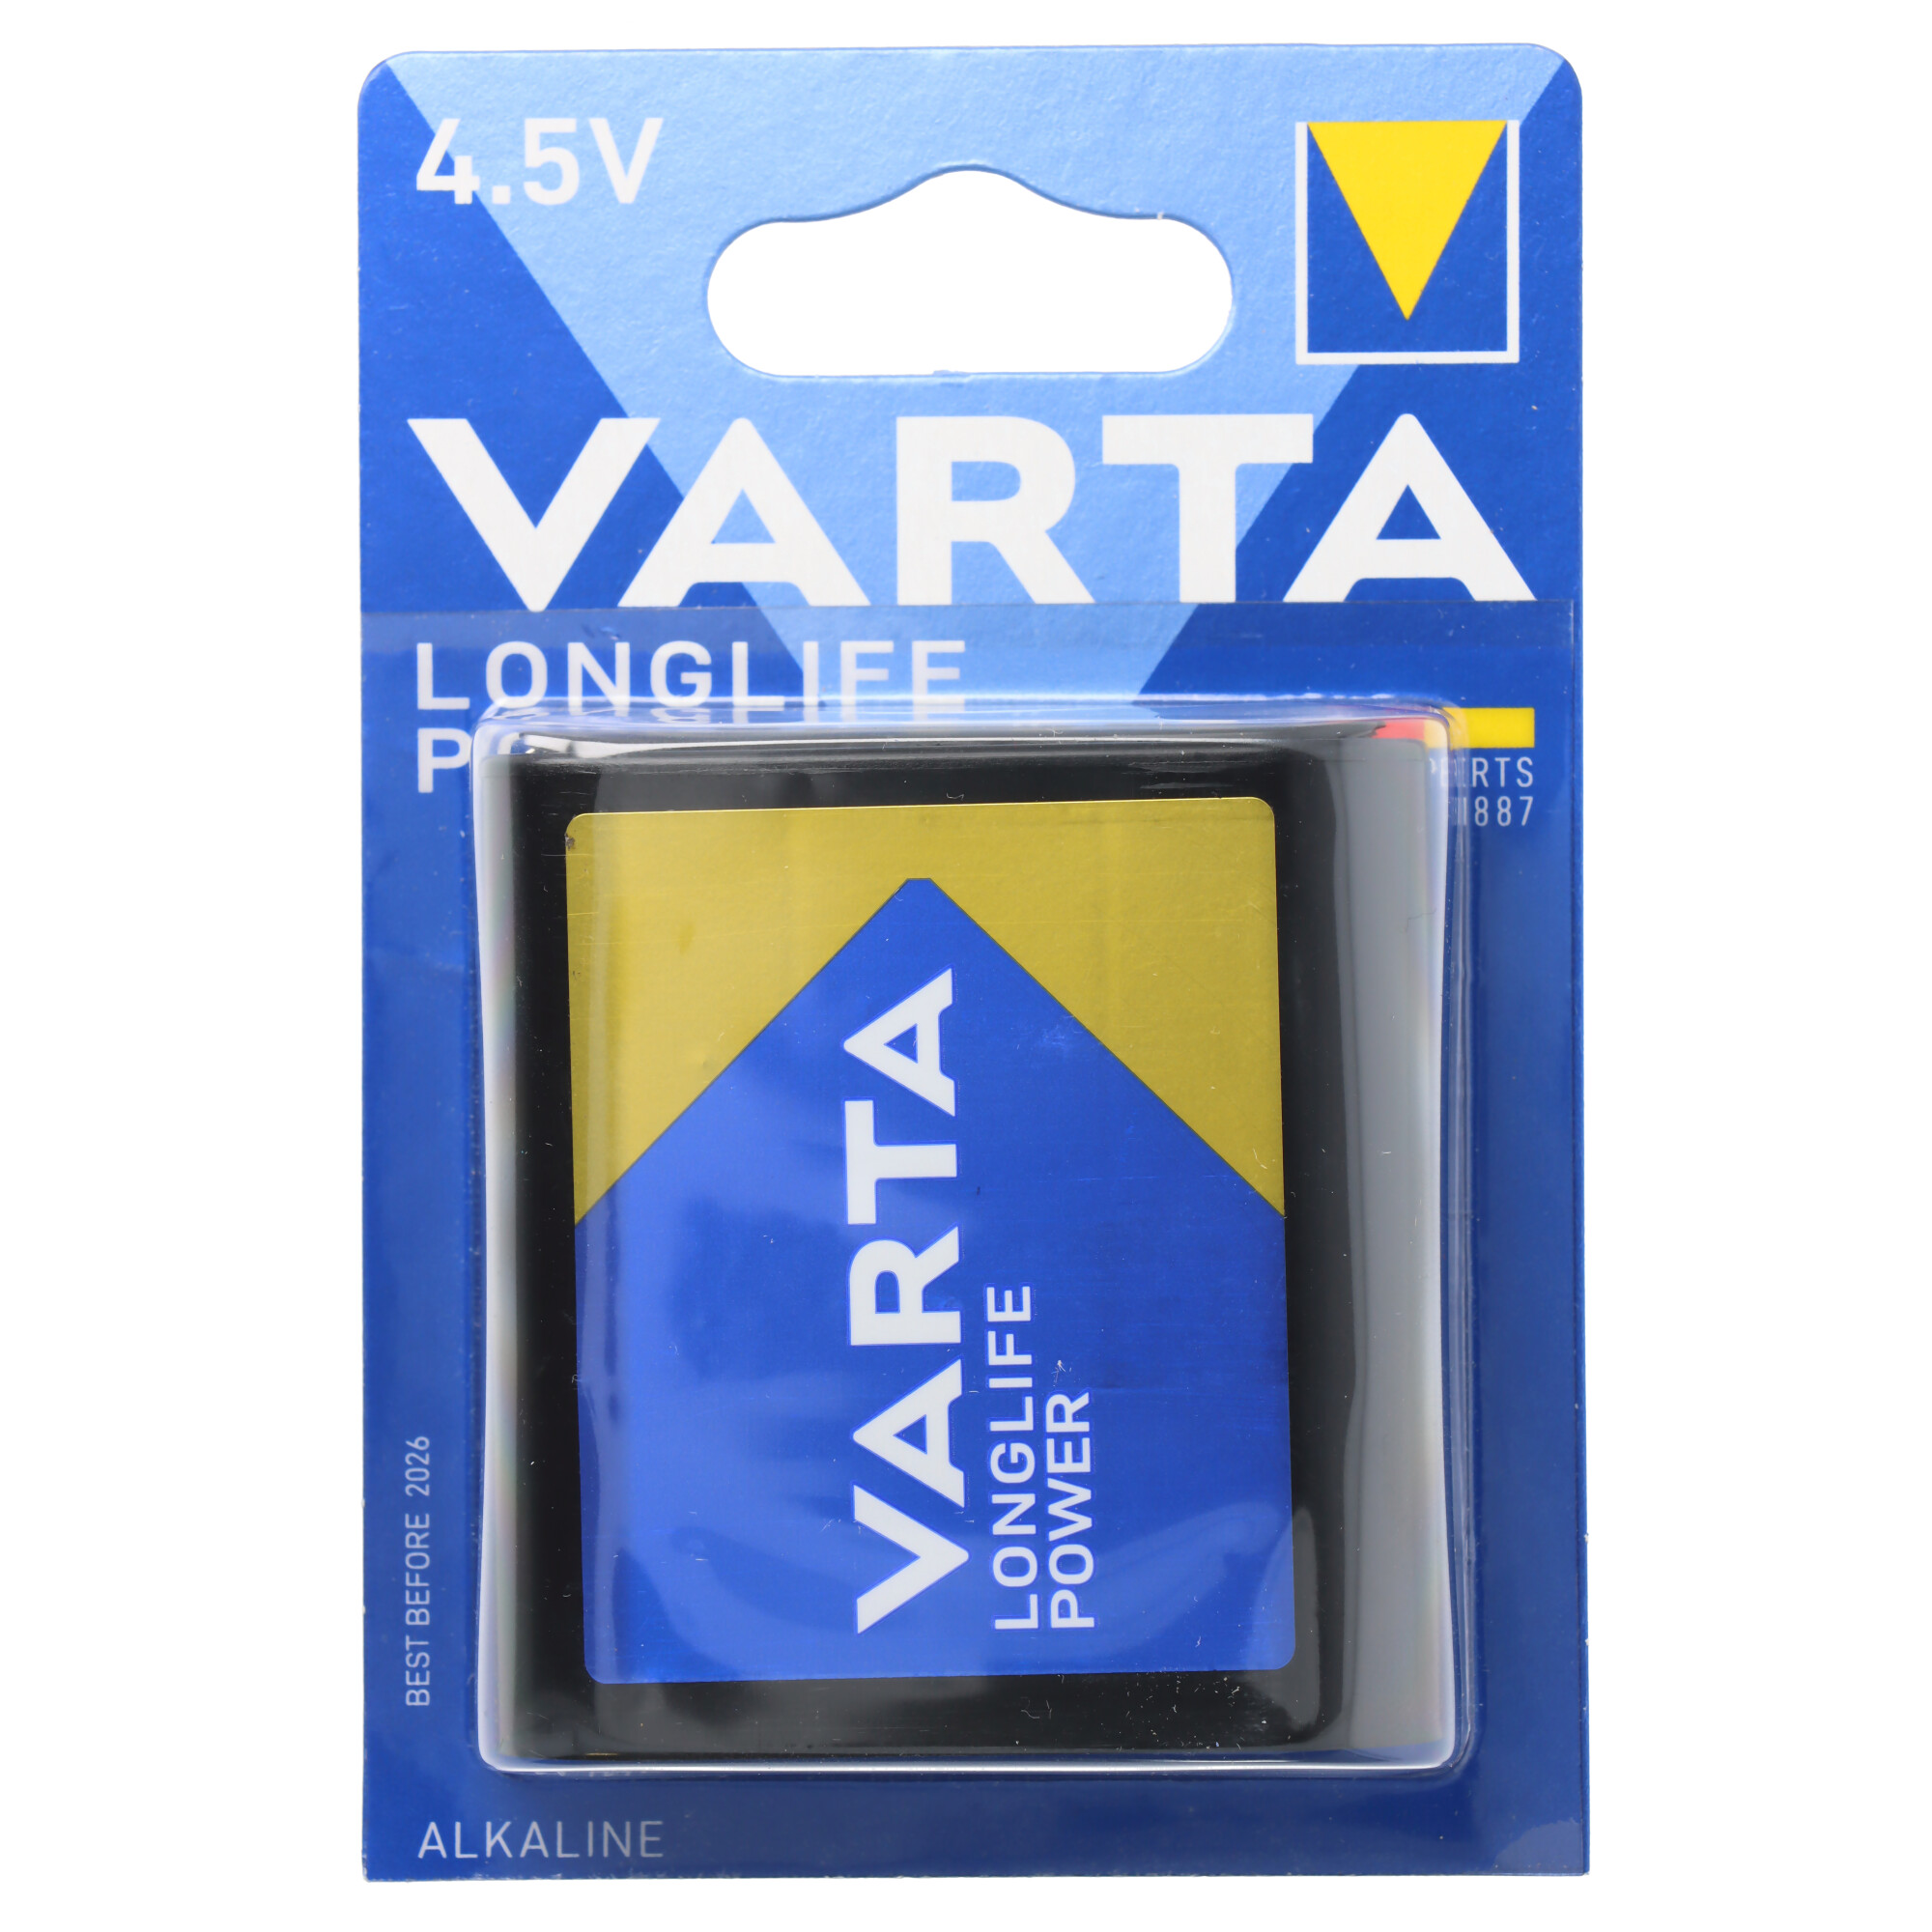 Varta Longlife Power (ehem. High Energy) 4,5V, MN1203, 3LR12, 3LR12P Flachbatterie